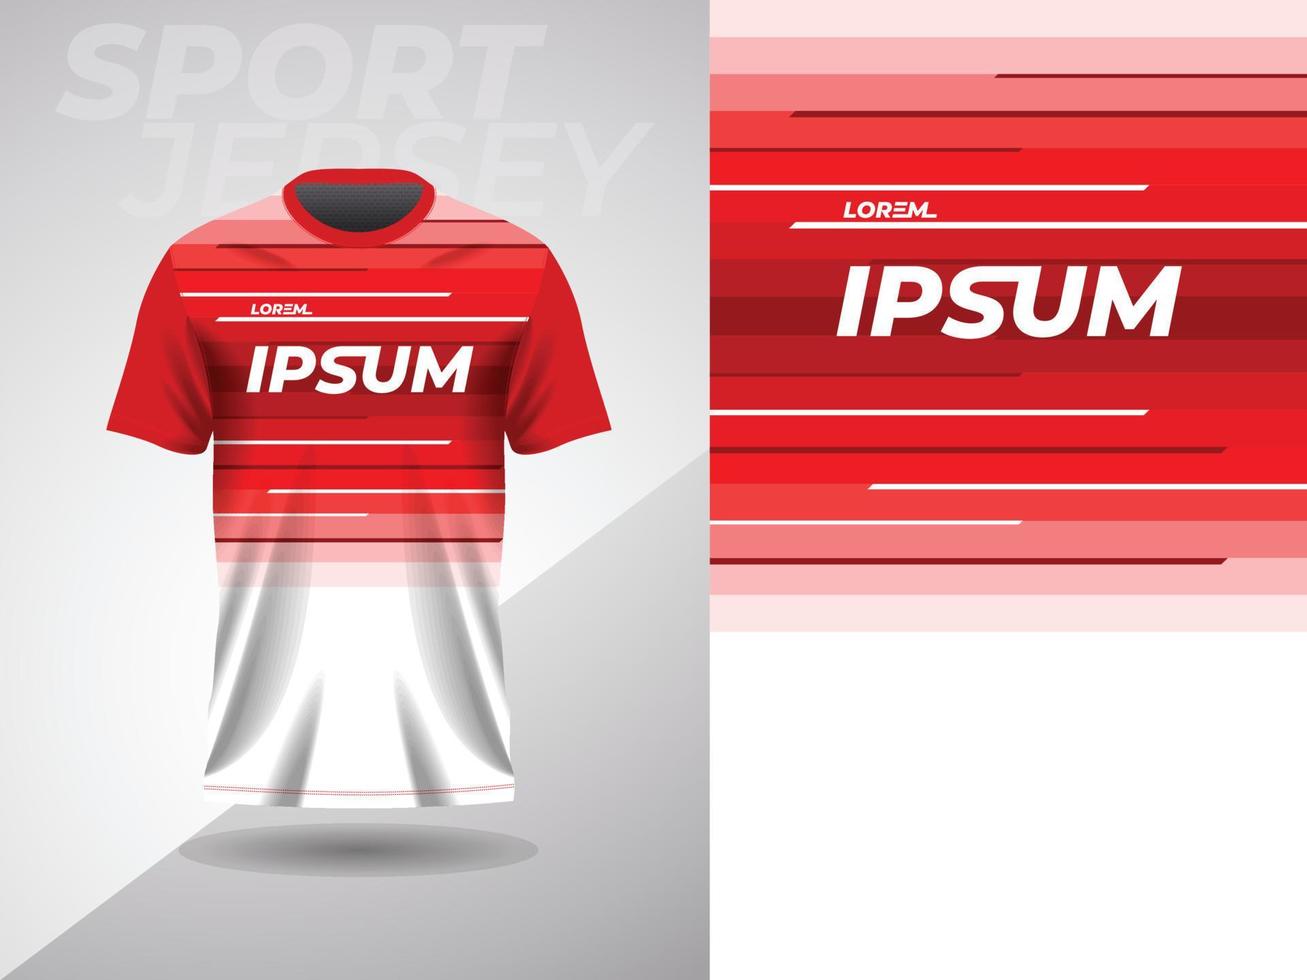 conception de maillot de sport de chemise abstraite rouge pour le football football course jeu cyclisme course vecteur